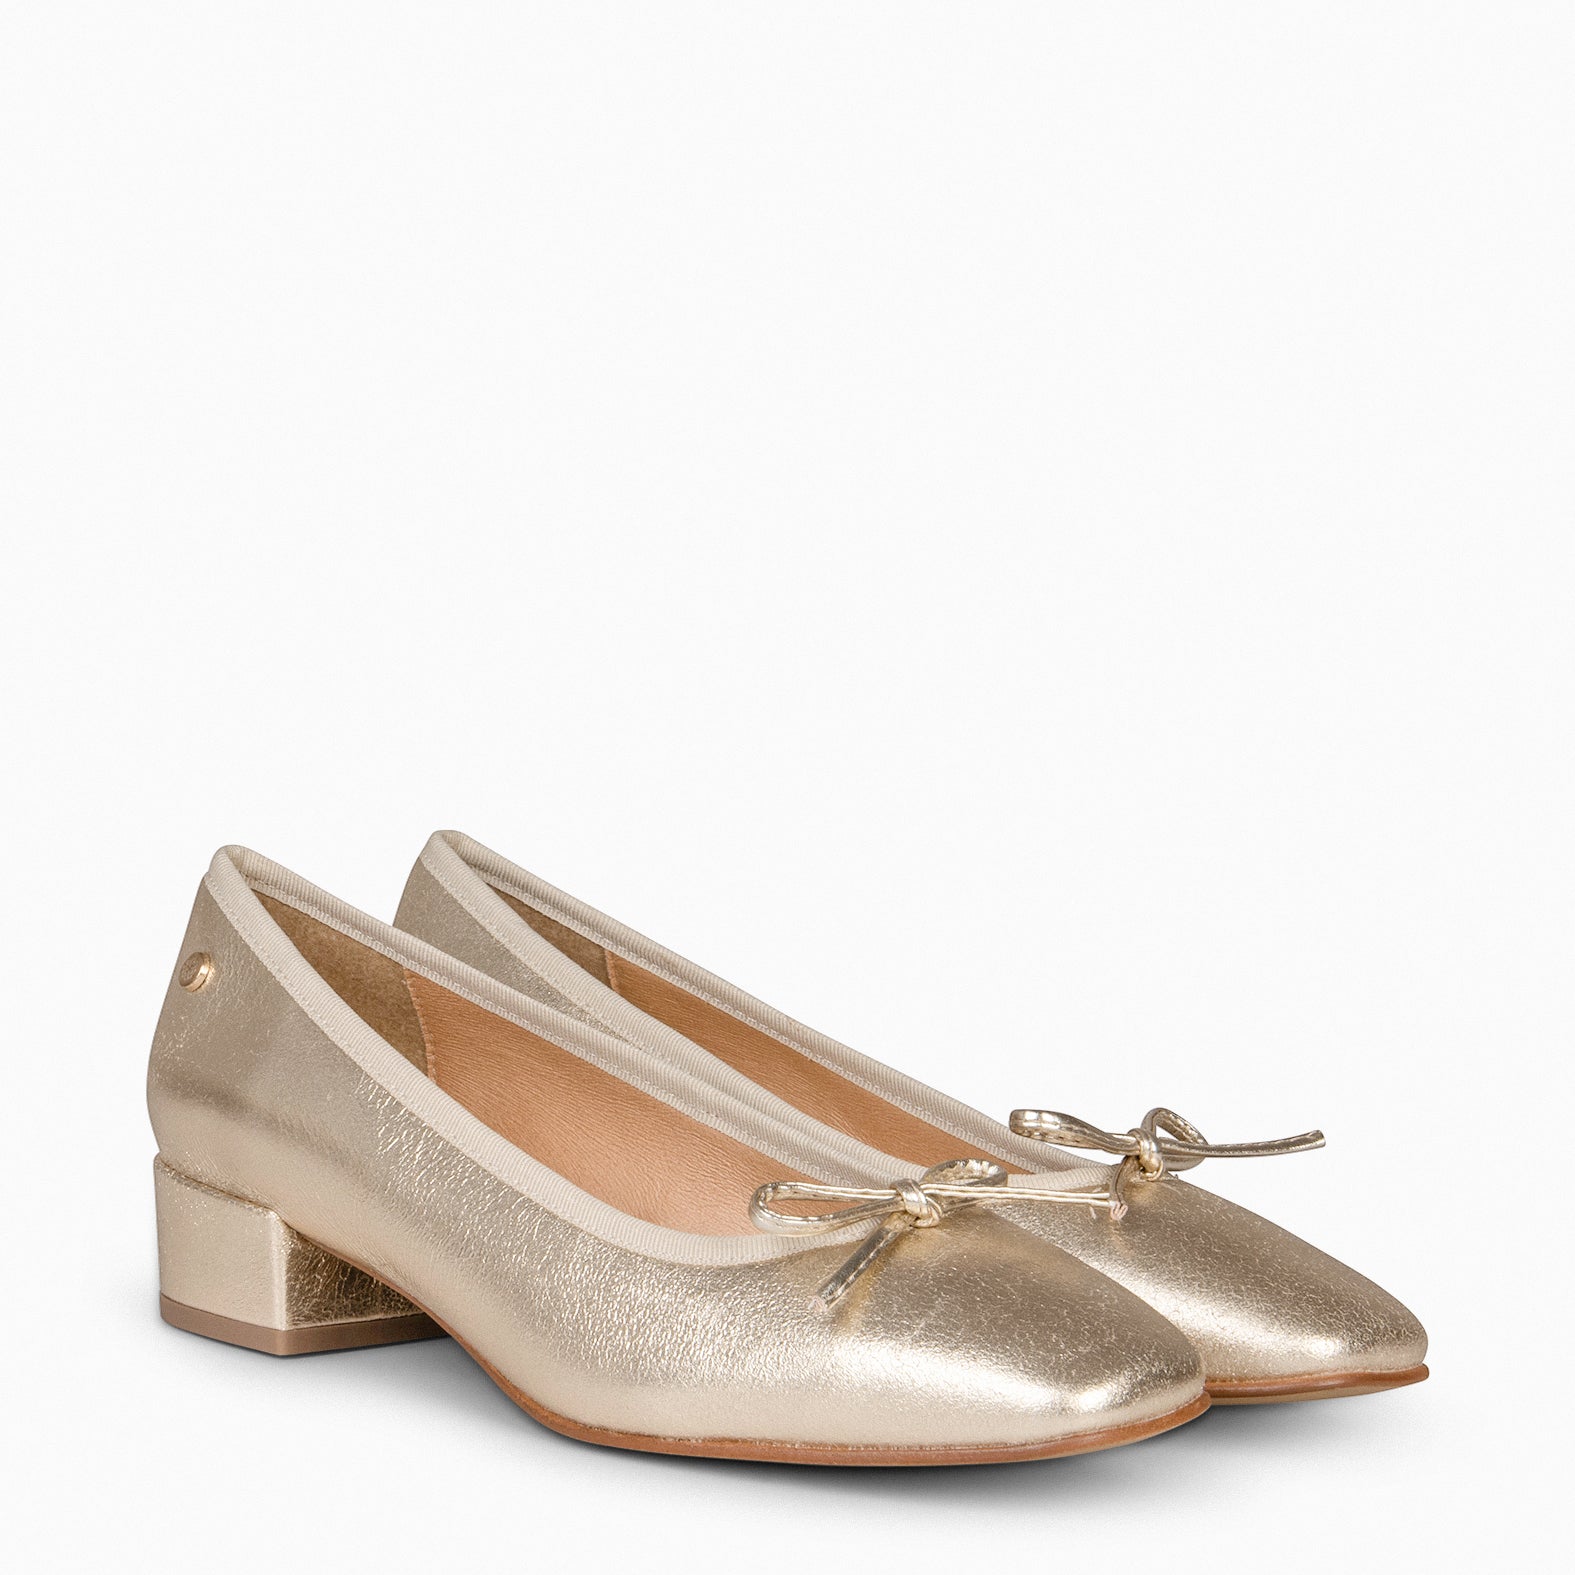 OPERA – GOLDEN ballerina with heel